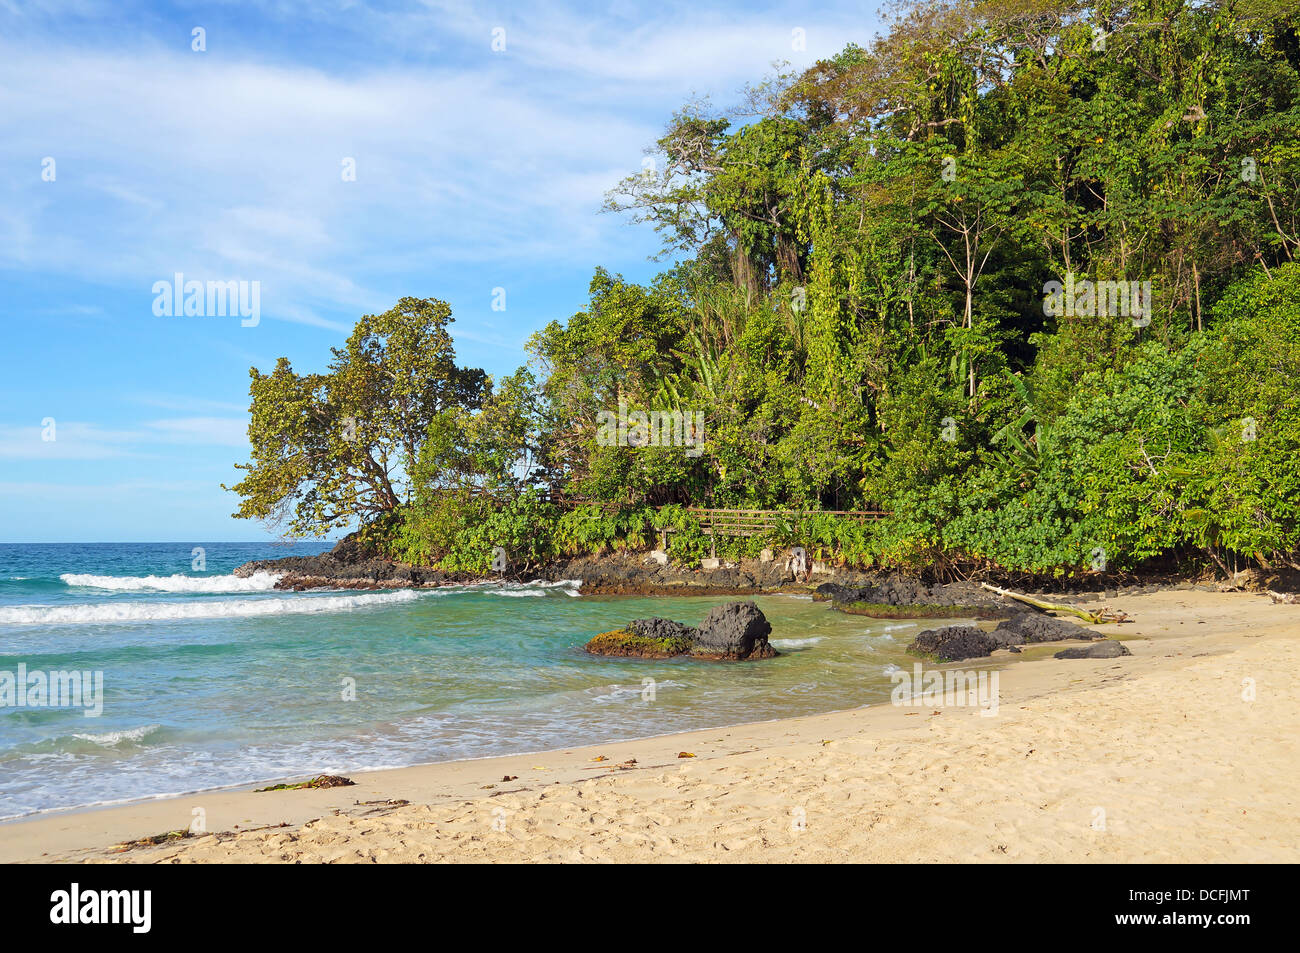 Bella spiaggia tropicale con vegetazione lussureggiante in background Foto Stock